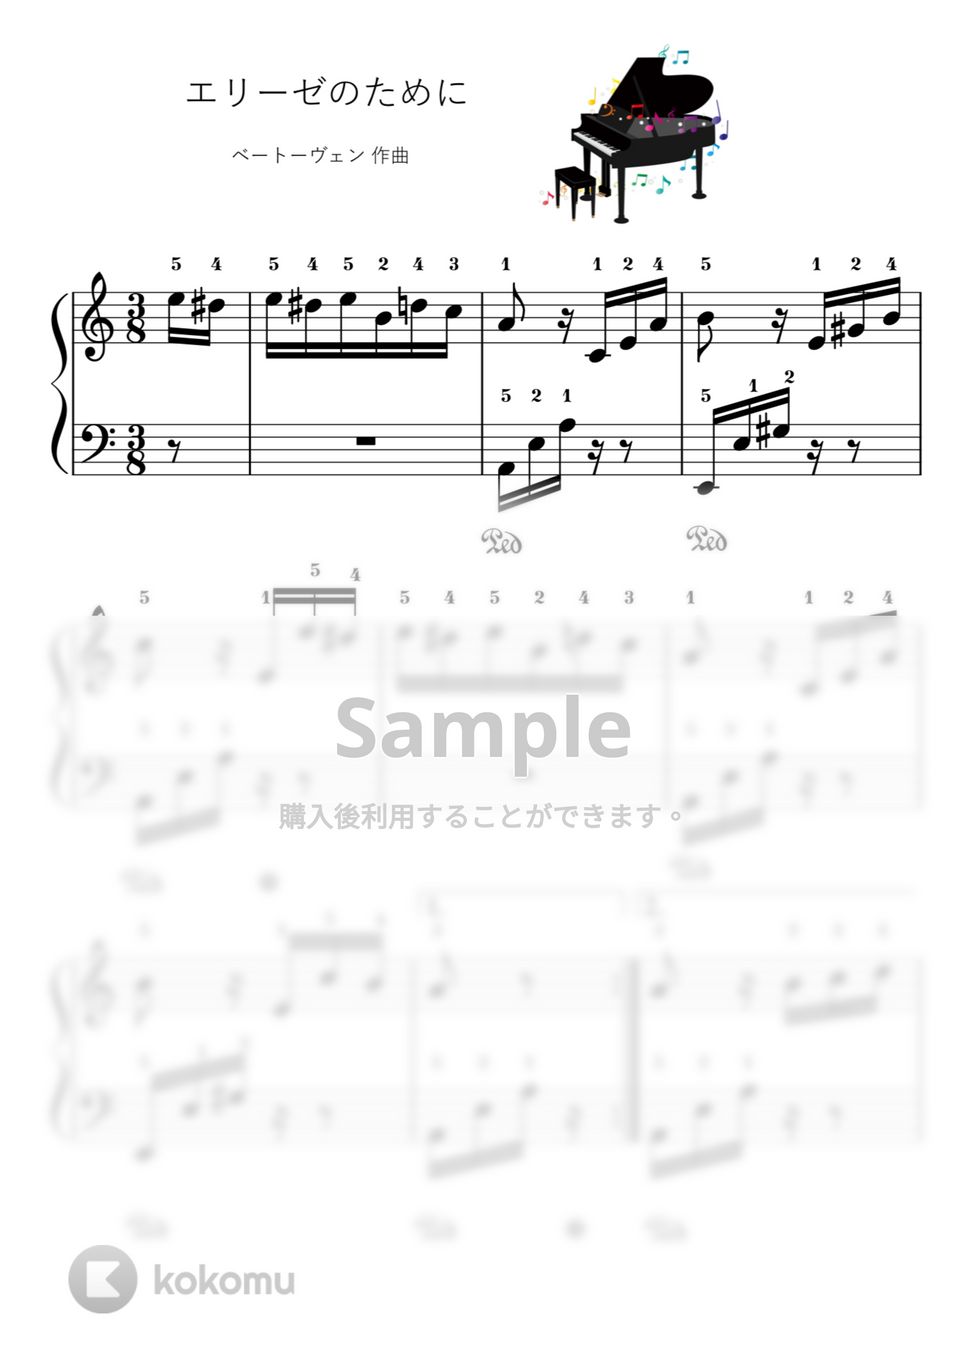 ベートーヴェン - 【初級】エリーゼのために (ピアノ初級) by ピアノのせんせいの楽譜集